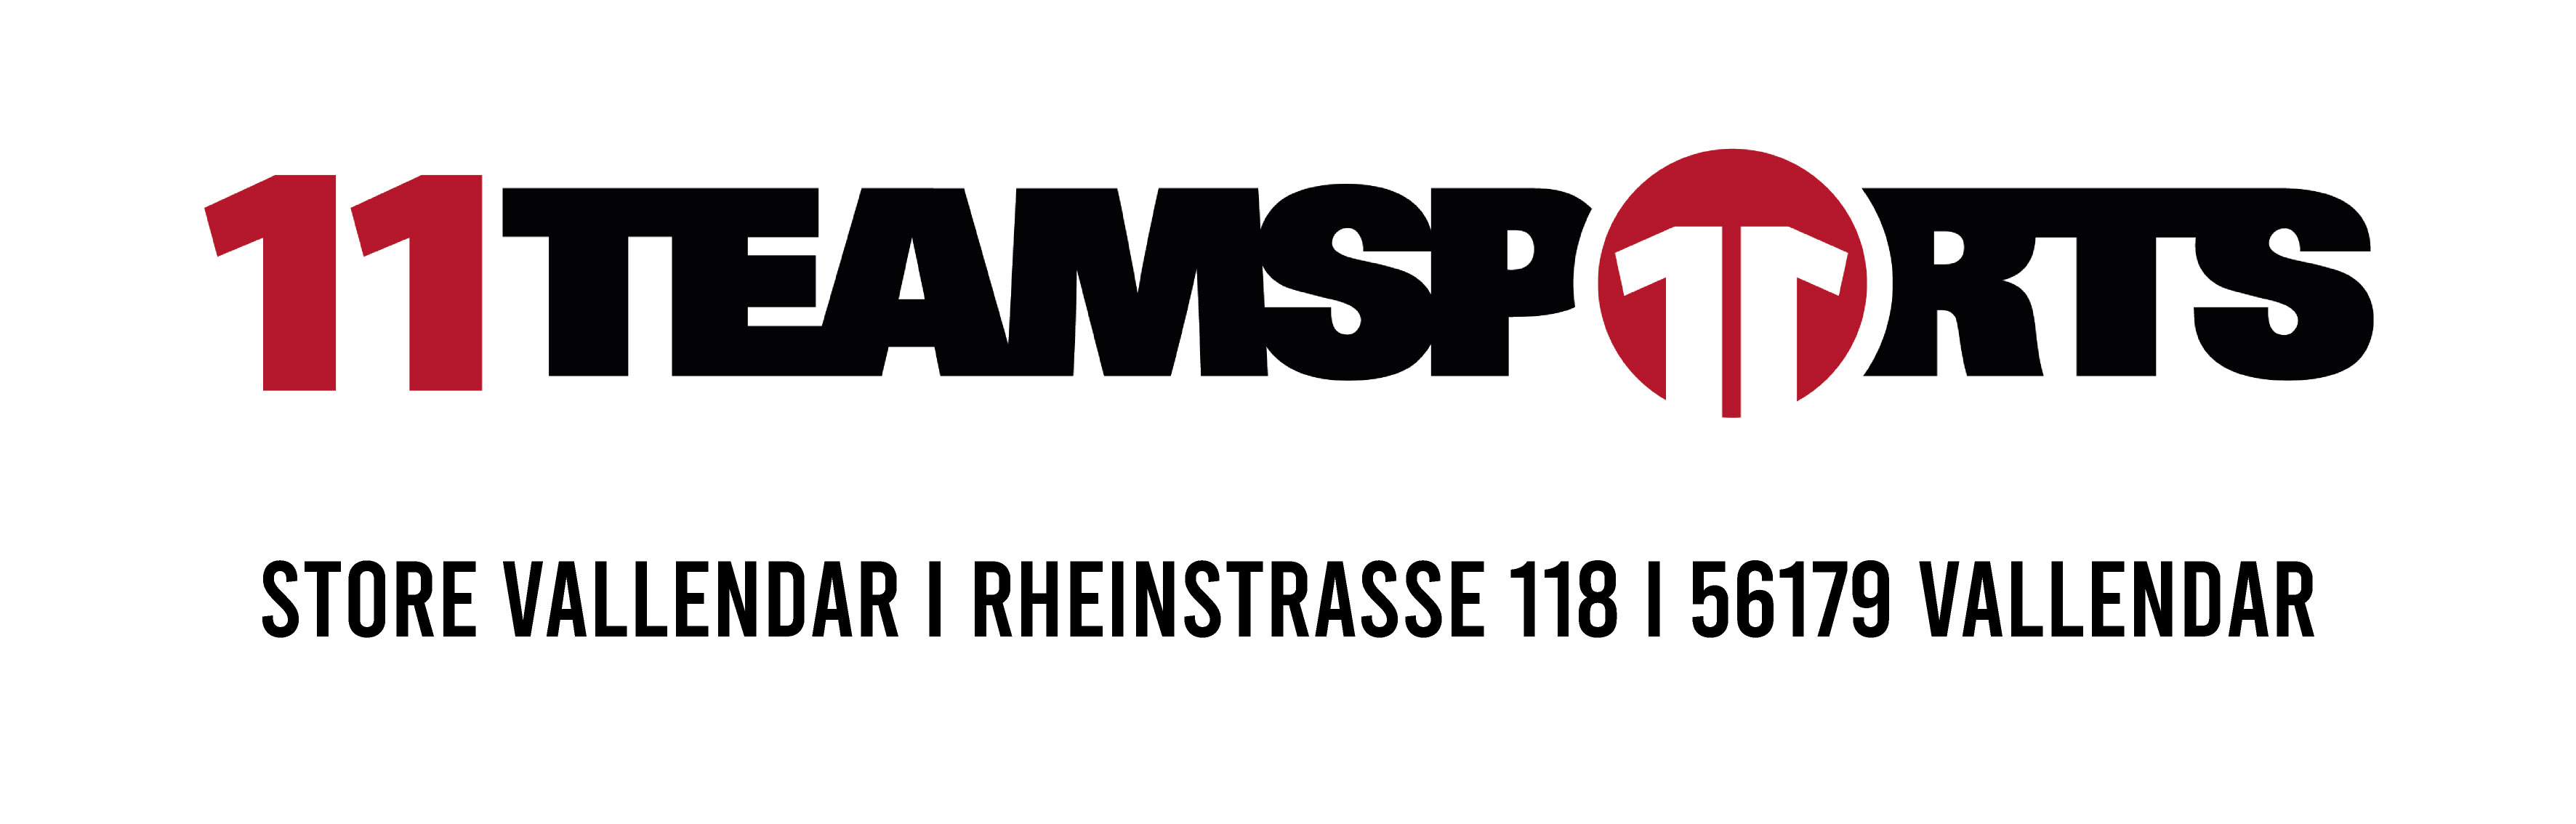 Germania Teamshop Logo 2